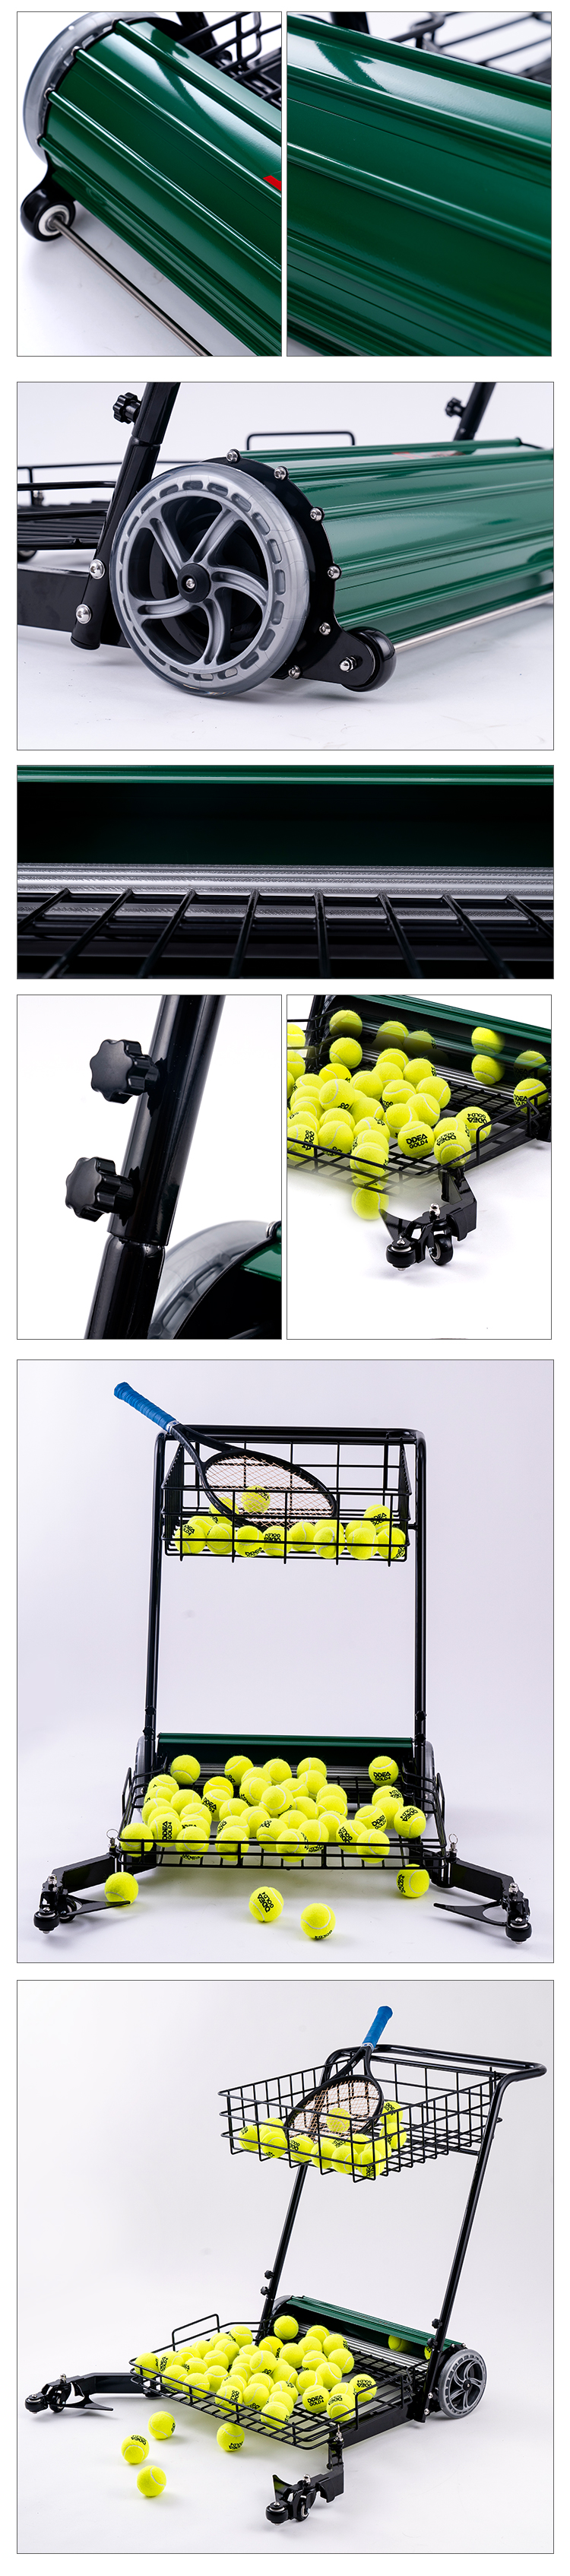 macchina per la raccolta del tennis (7)